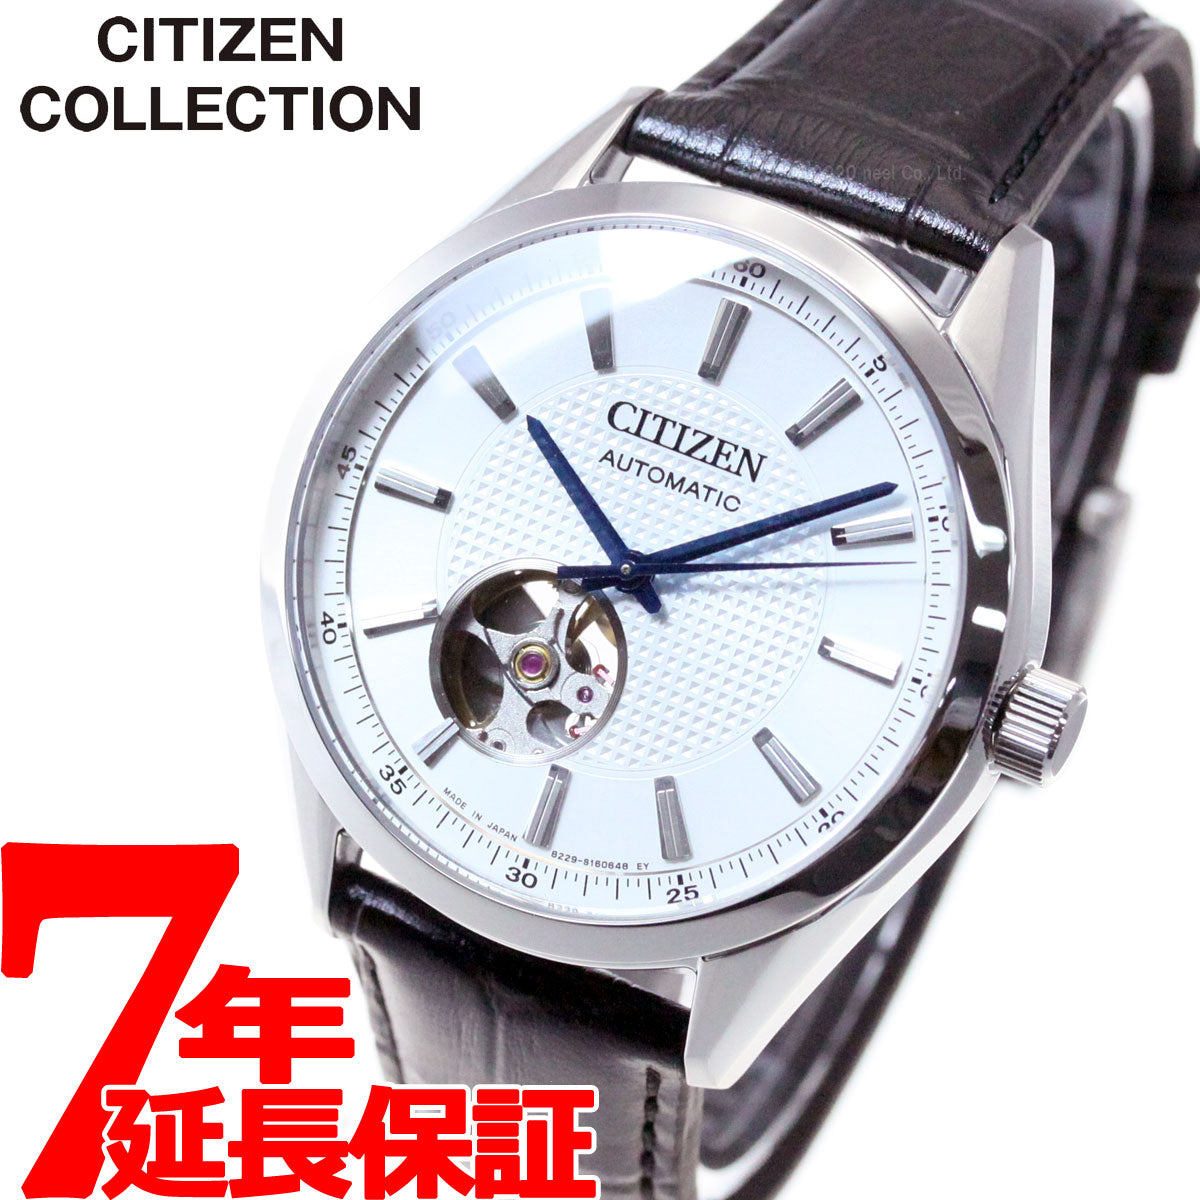 シチズンコレクション CITIZEN COLLECTION メカニカル 自動巻き 機械式 腕時計 メンズ クラシカル オープンハート  NH9111-11A